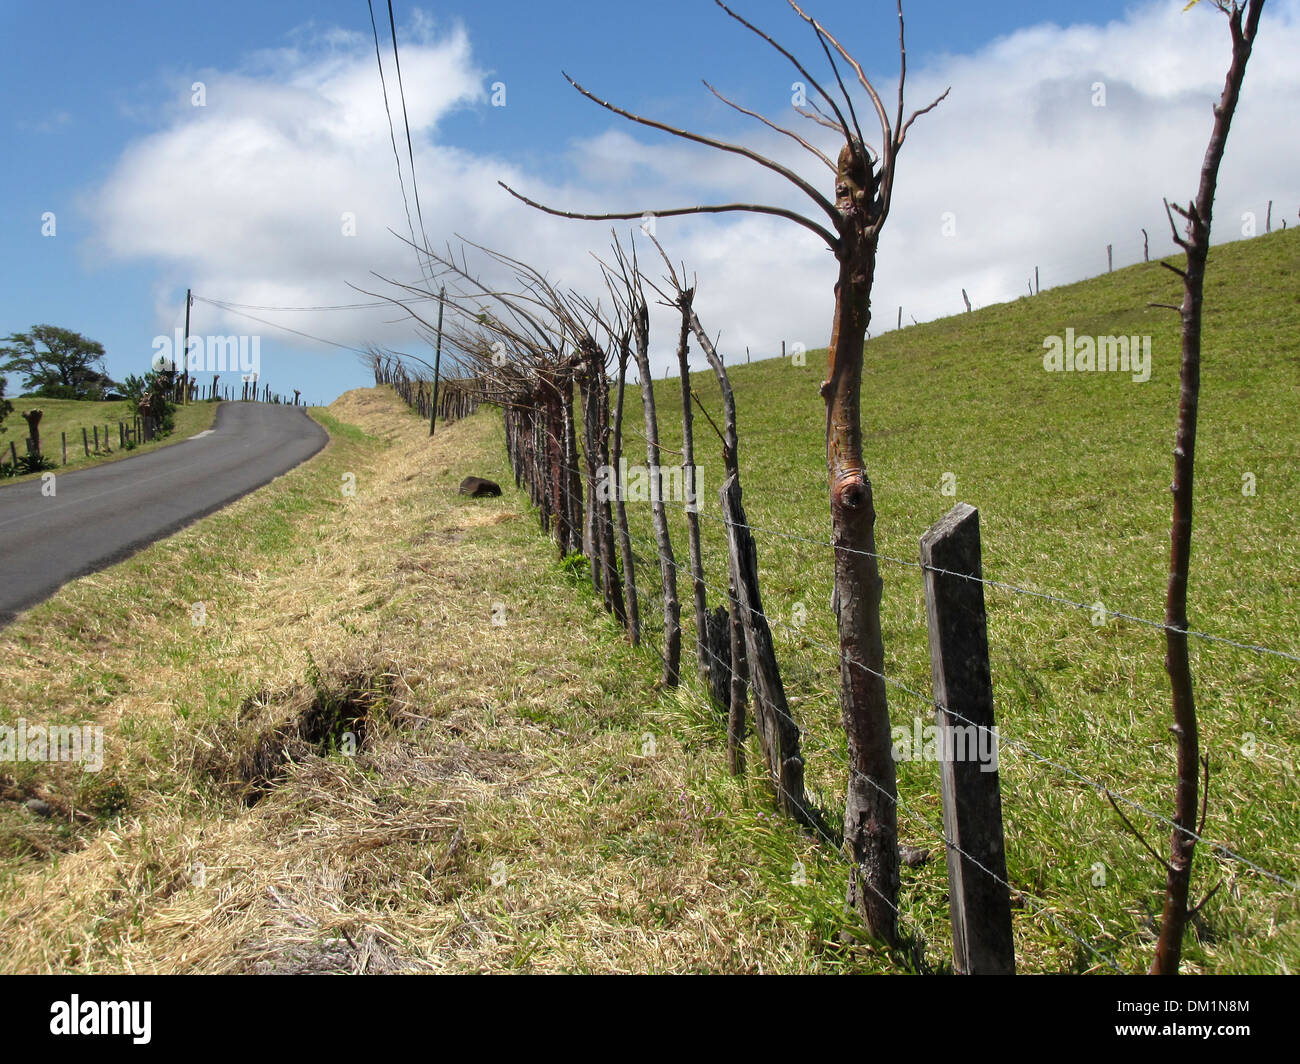 Una recinzione vivente che è costituito da una miscela di posti e gli alberi vivi protegge un campo di fattoria, questa in Costa Rica. Foto Stock